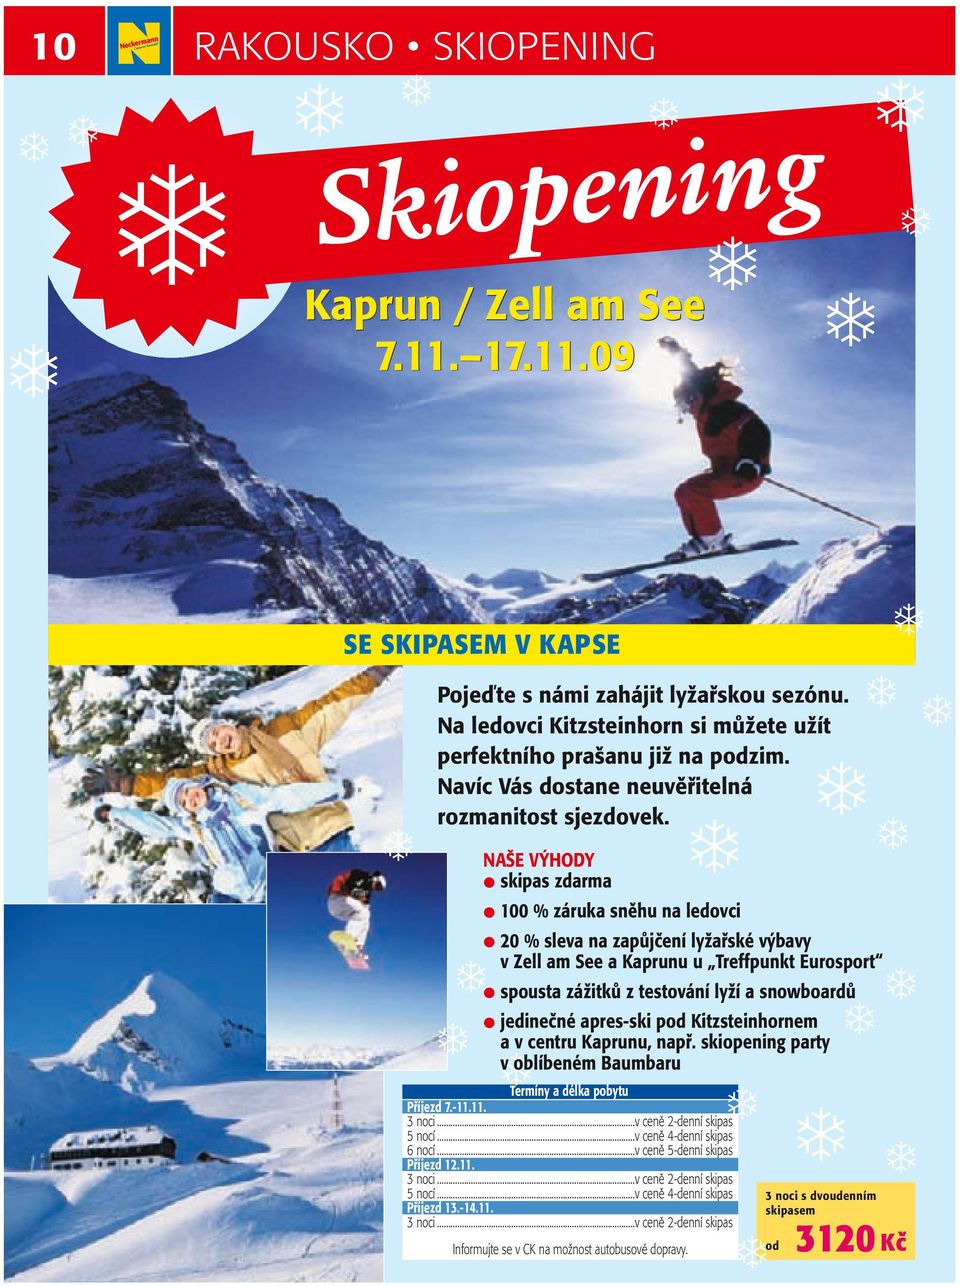 NAŠE VÝHODY skipas zdarma 100 % záruka sněhu na ledovci 20 % sleva na zapůjčení lyžařské výbavy v Zell am See a Kaprunu u Treffpunkt Eurosport spousta zážitků z testování lyží a snowboardů jedinečné